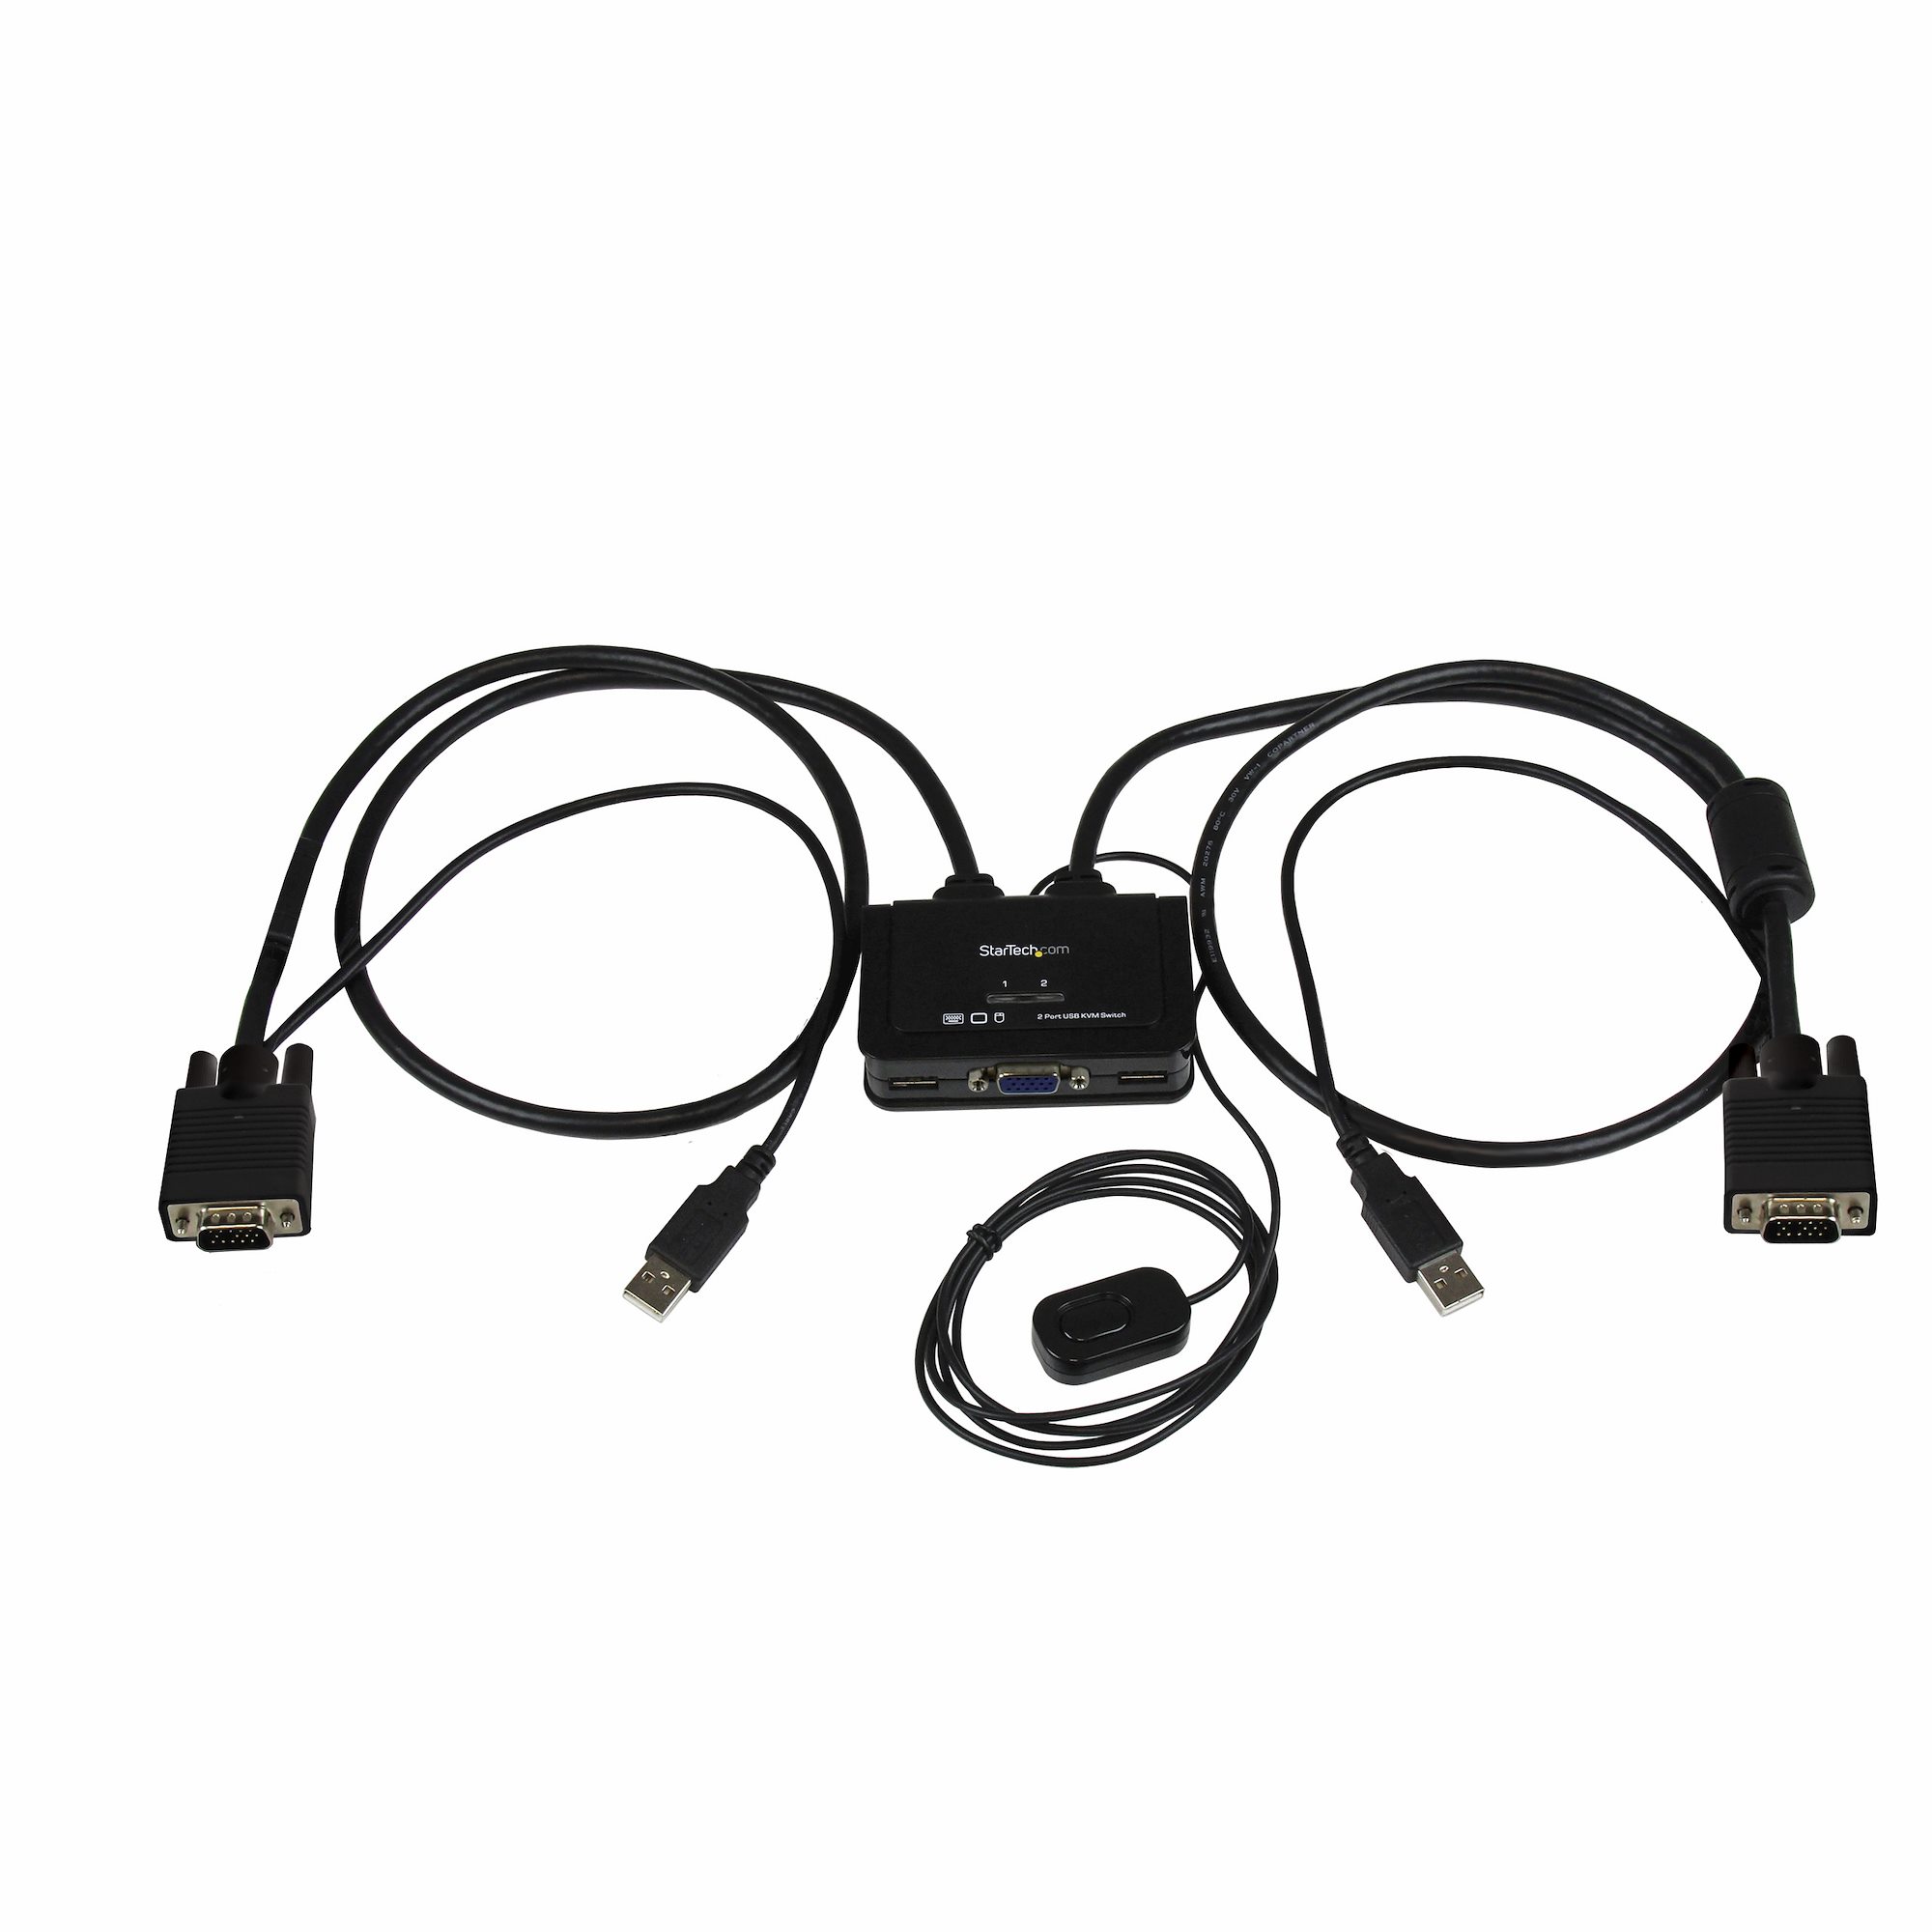 【SV211USB】2 PORT USB VGA CABLE KVM SWITCH